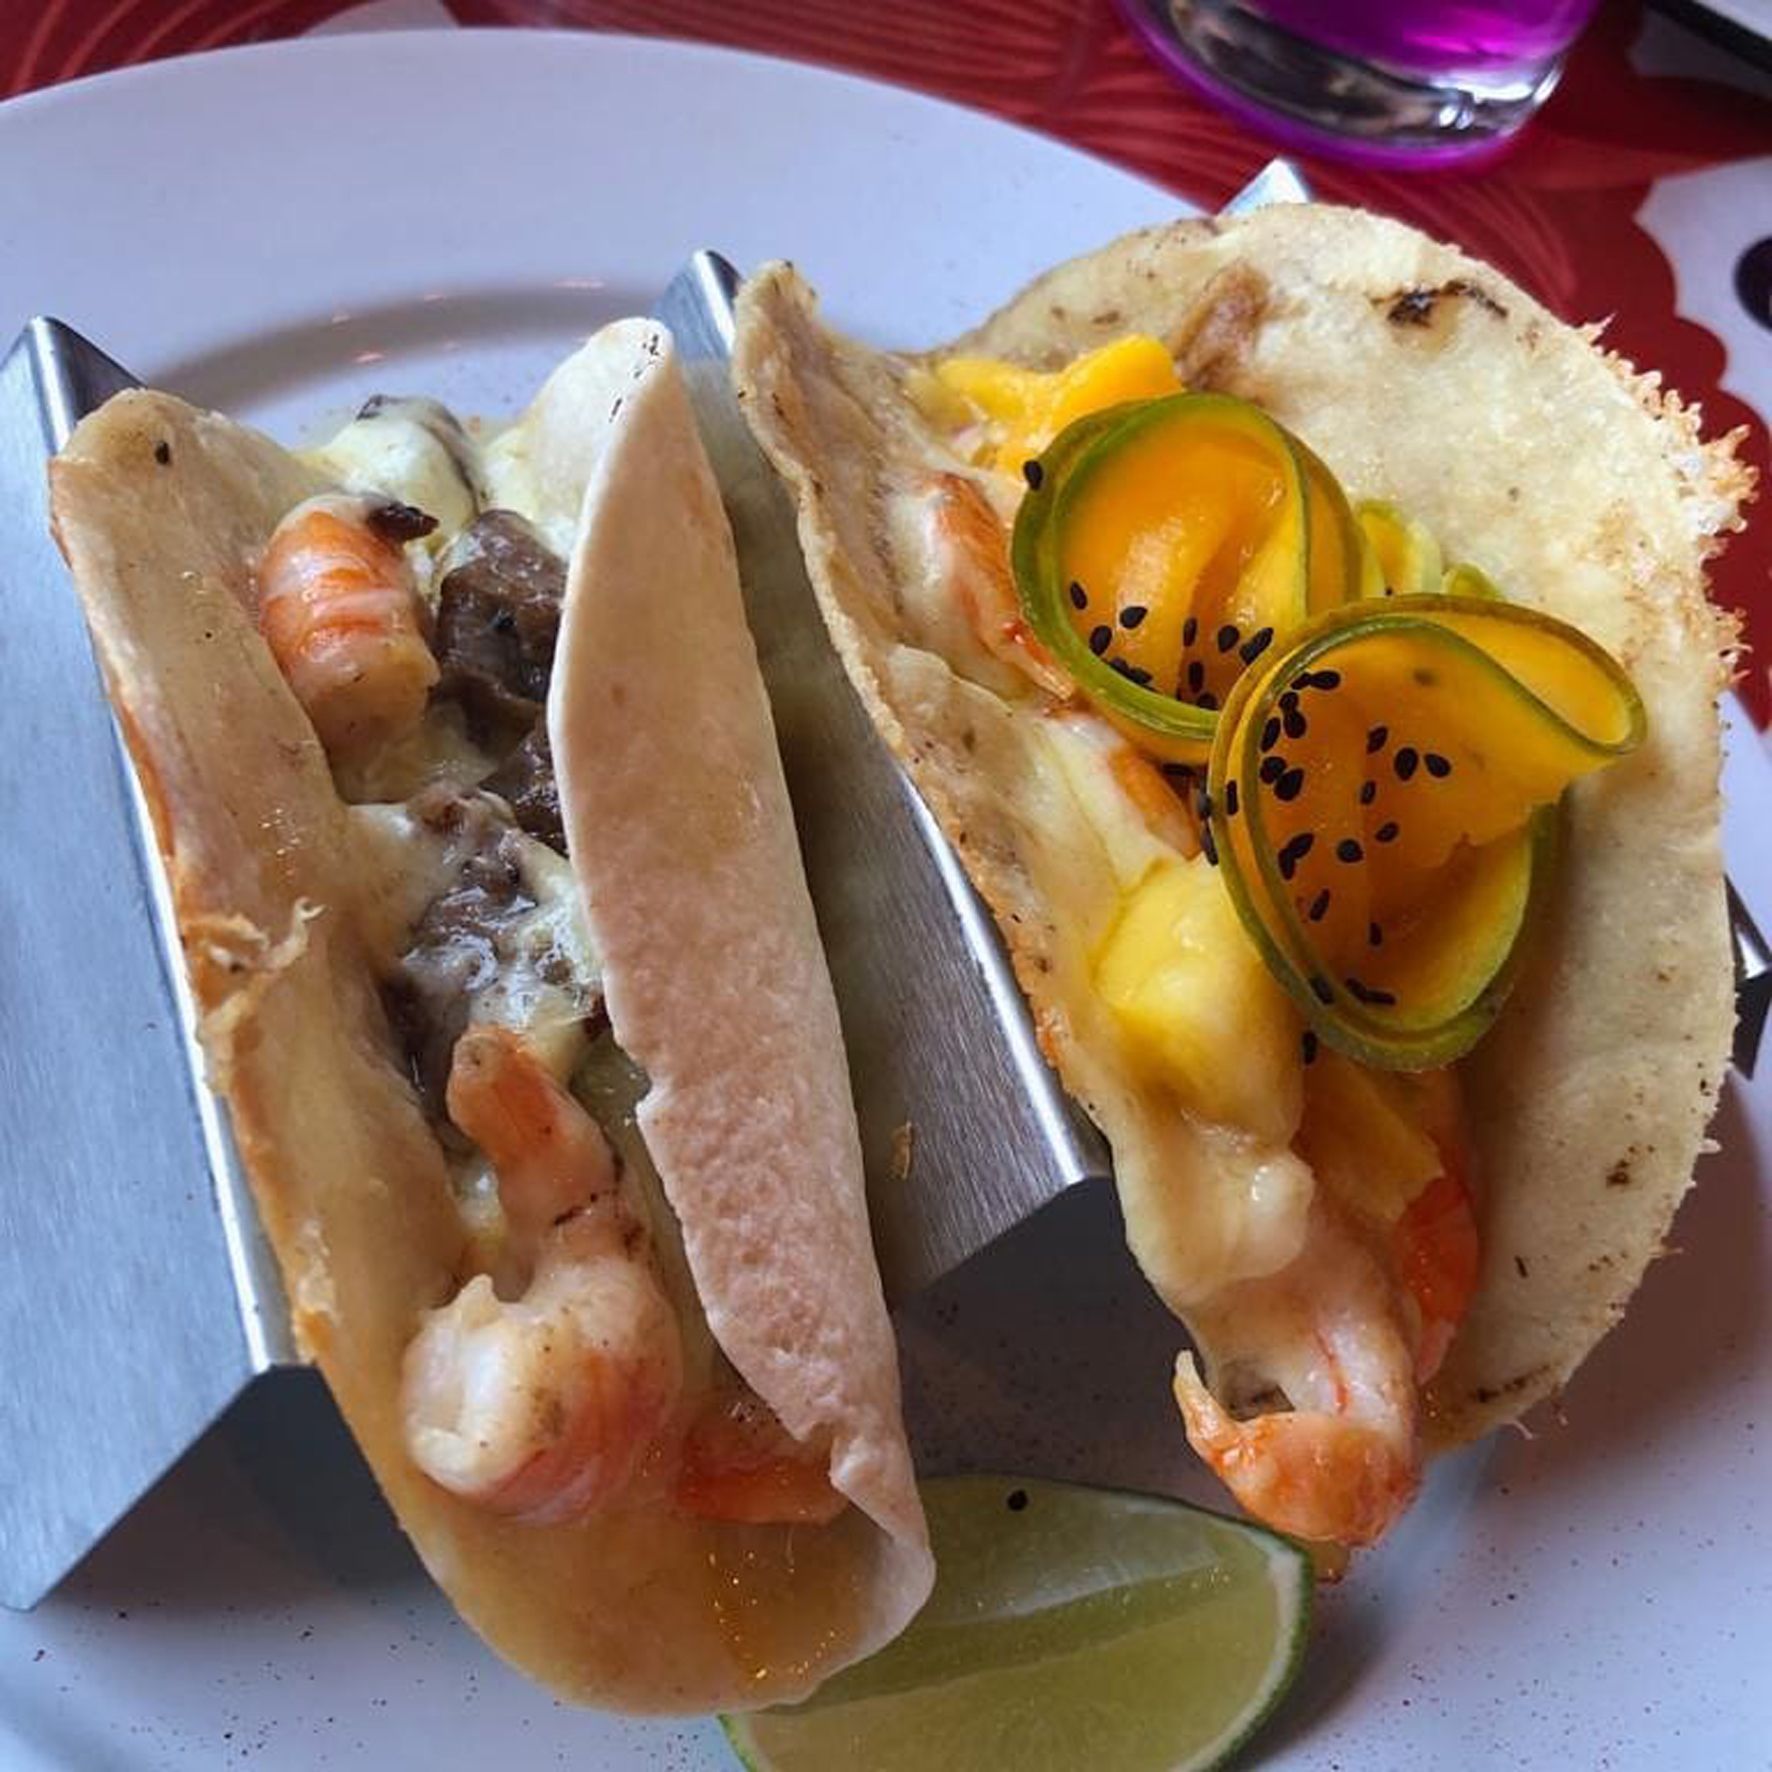 Tacos más o menos sofisticados como los de La Bendita o Los Tacos de Roy son un platillo obligatorio en una visita a Taxco.